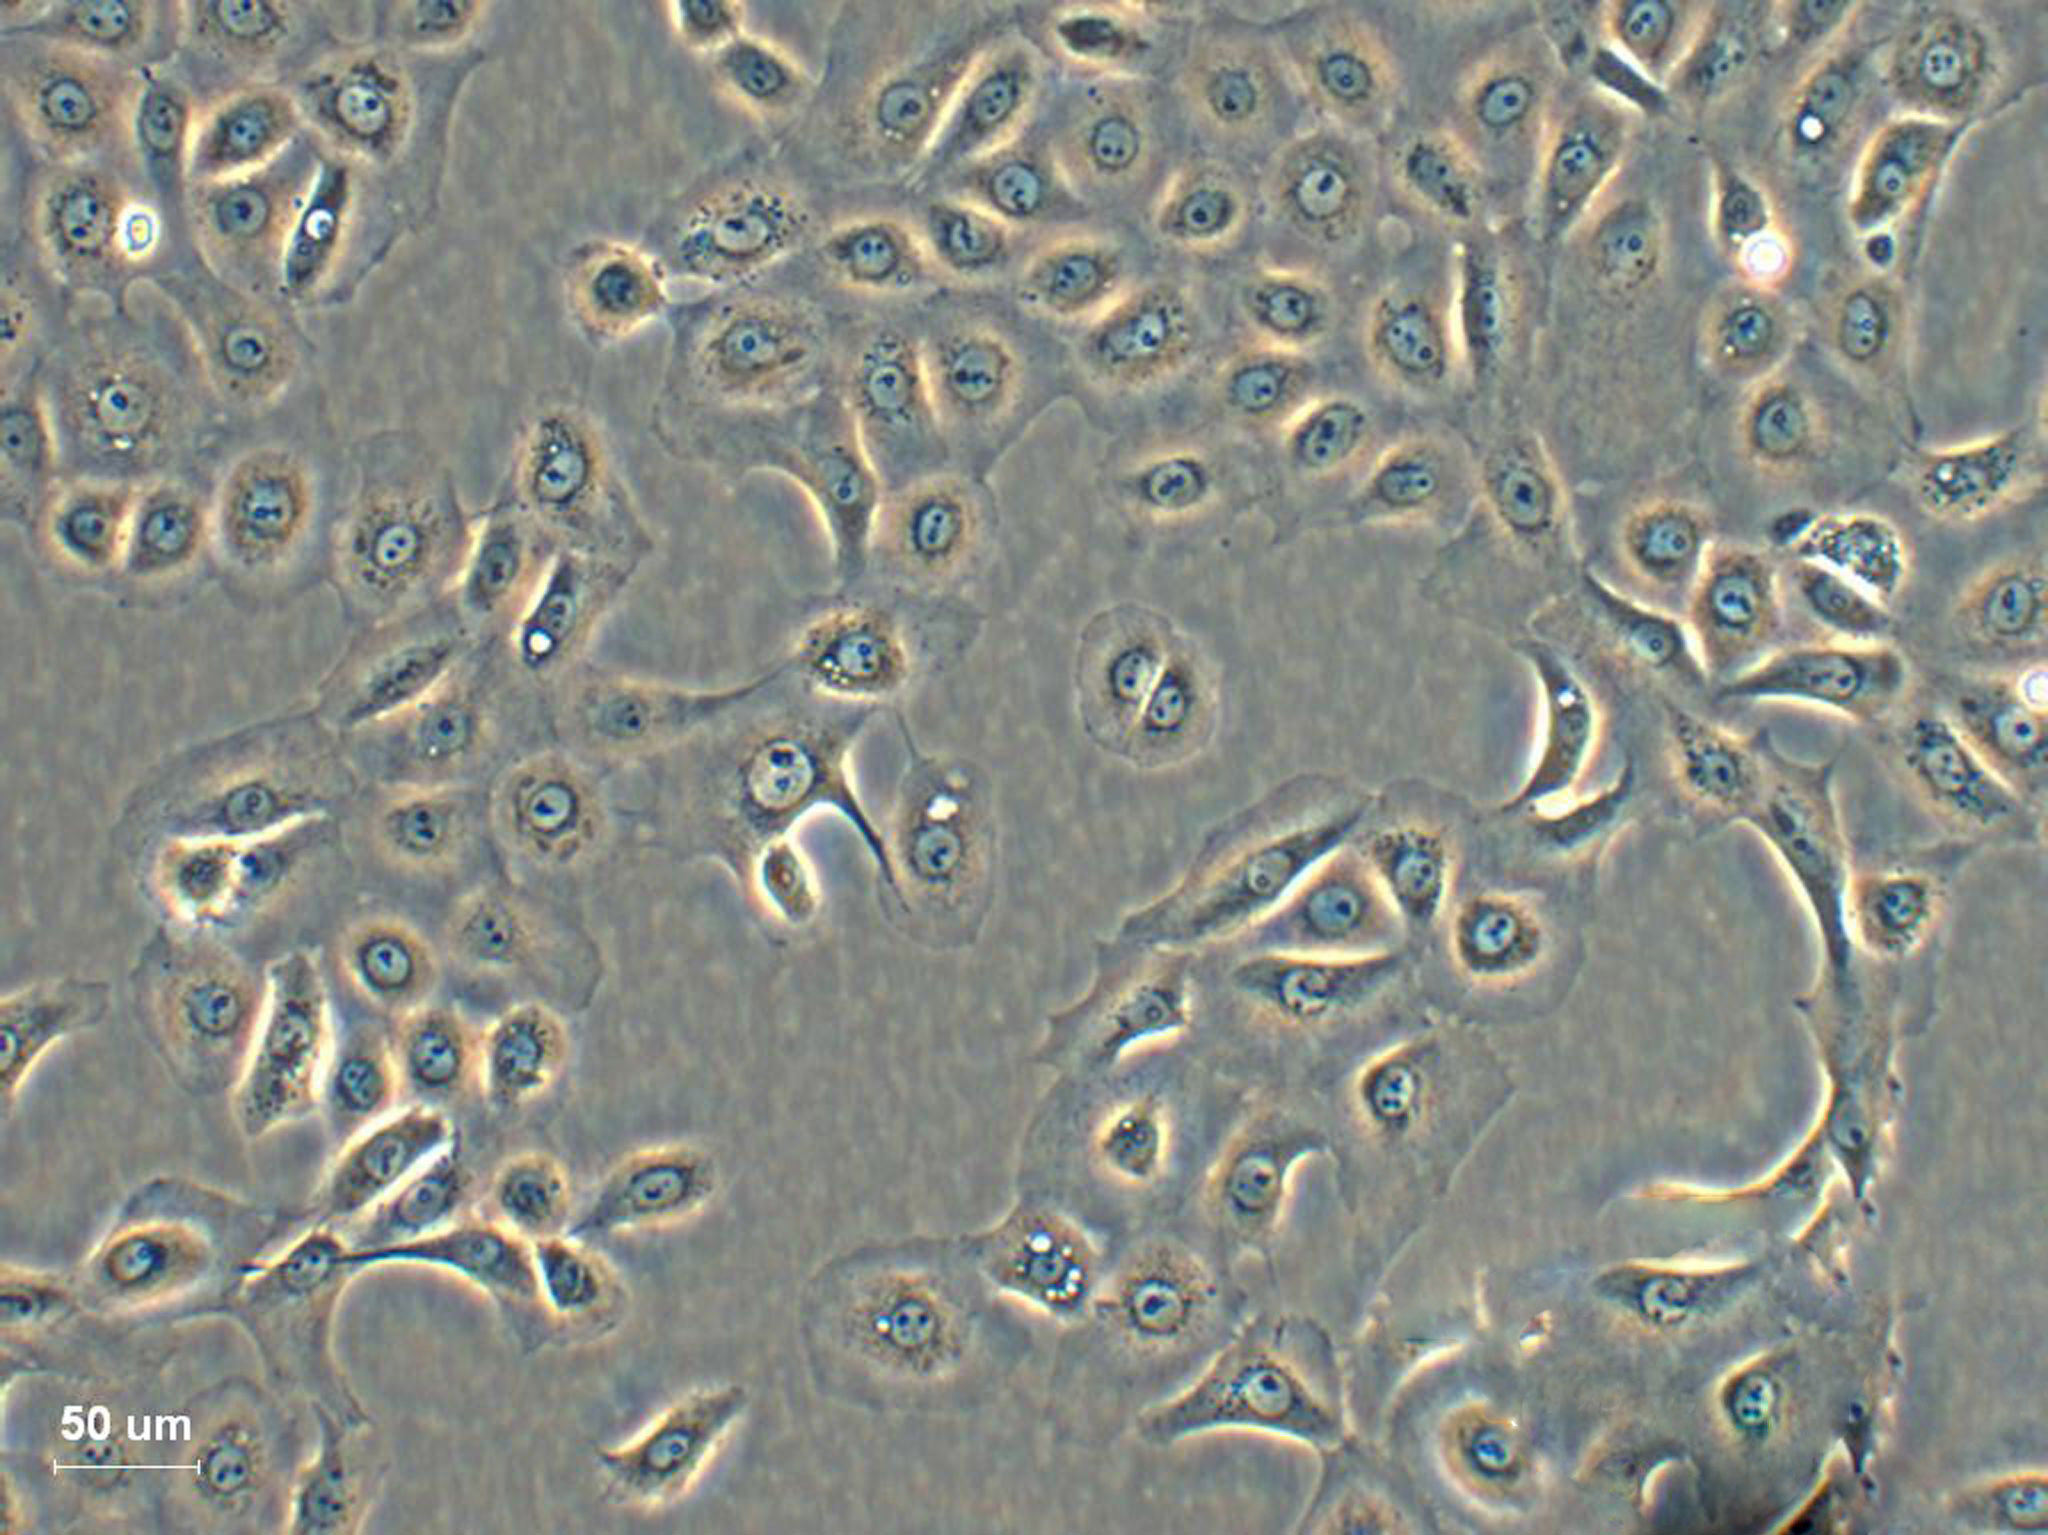 HEI193 epithelioid cells人神经鞘瘤细胞系,HEI193 epithelioid cells